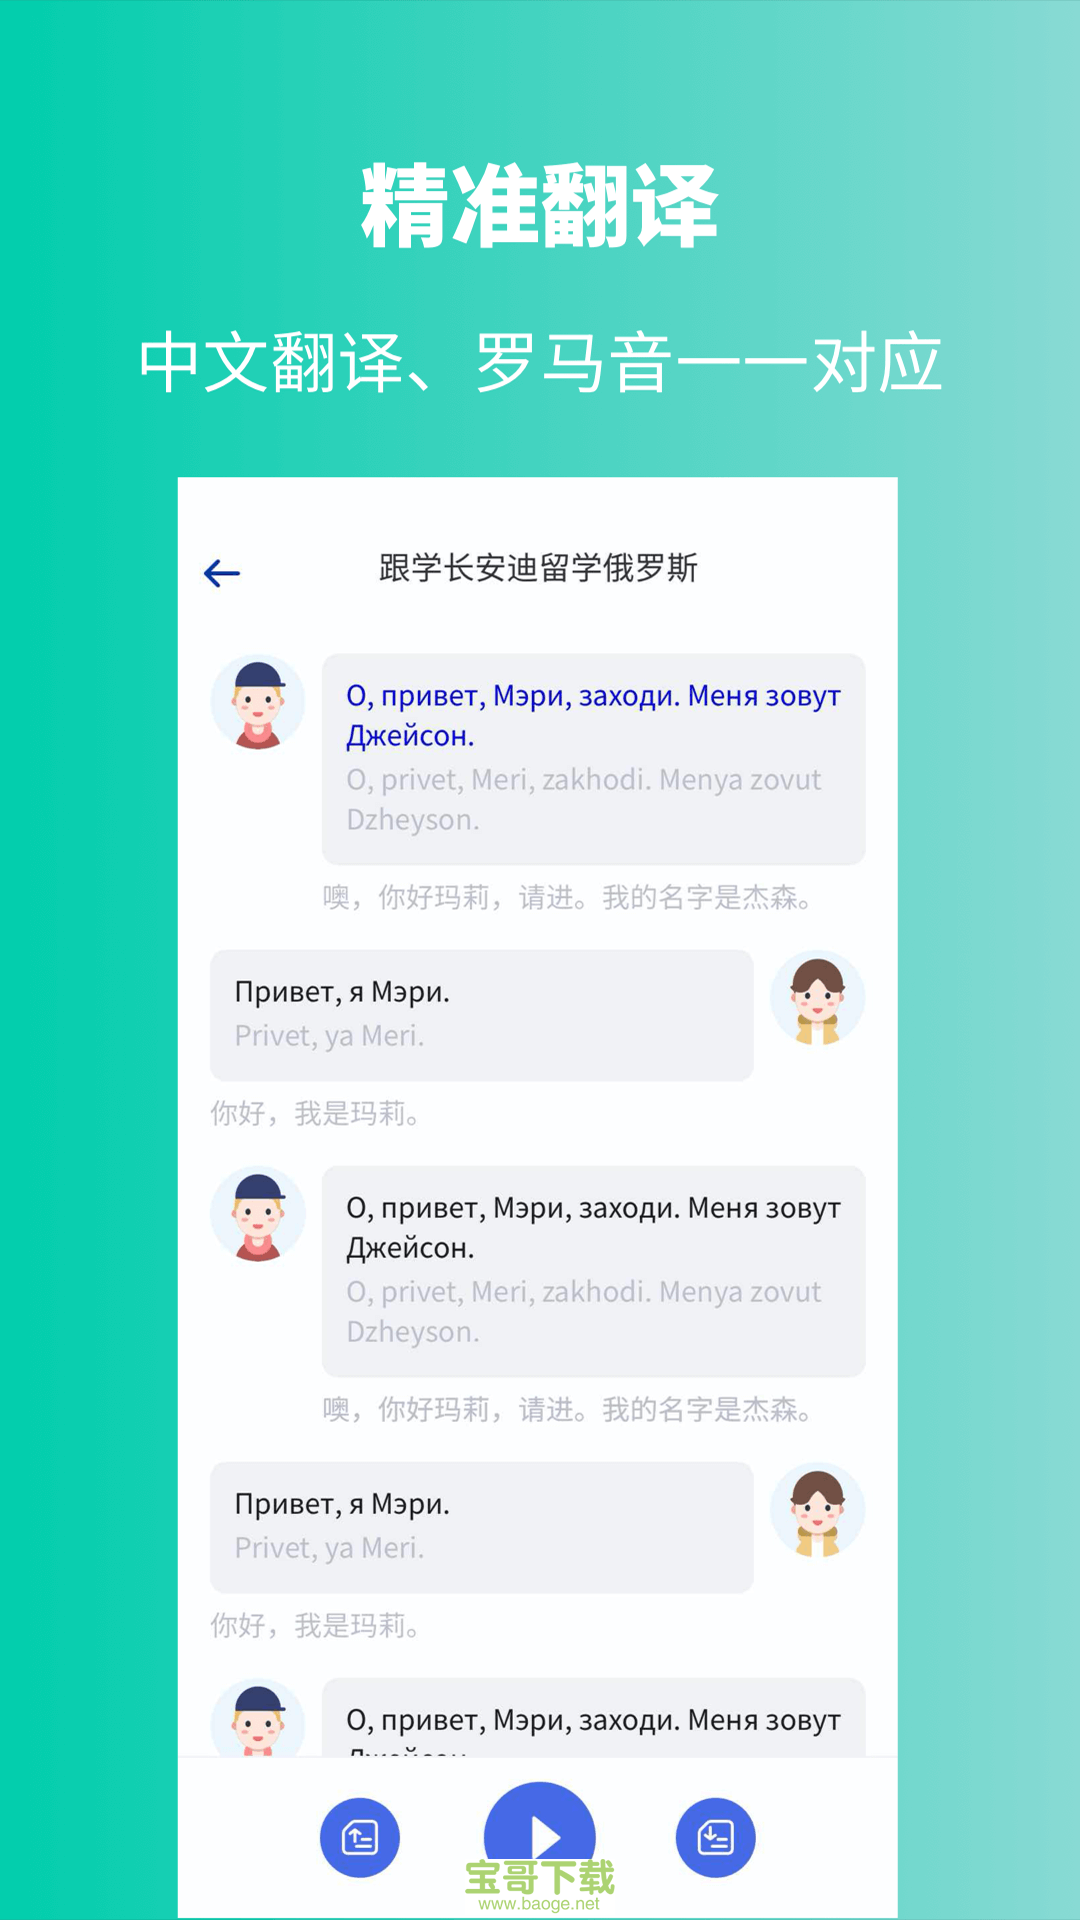 俄语学习app